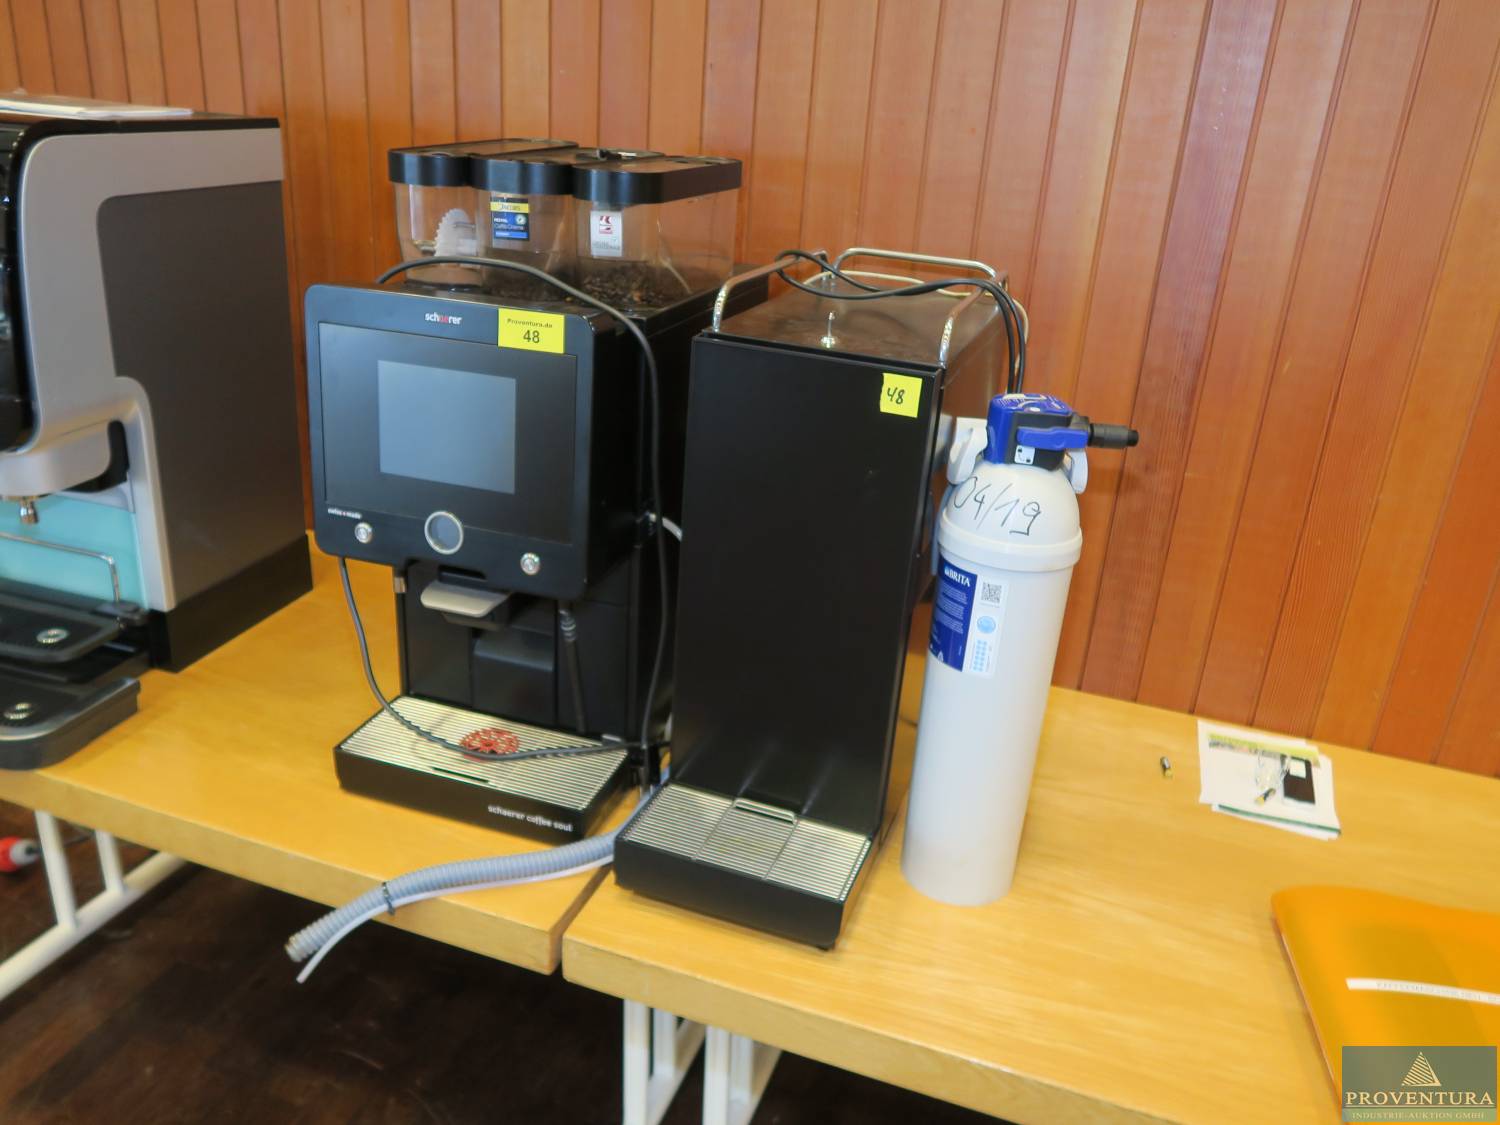 Resteauktion: Kaffeeautomat SCHAERER mit Milchkühlschrank und Wasserfilter, Sofortkauf möglich!